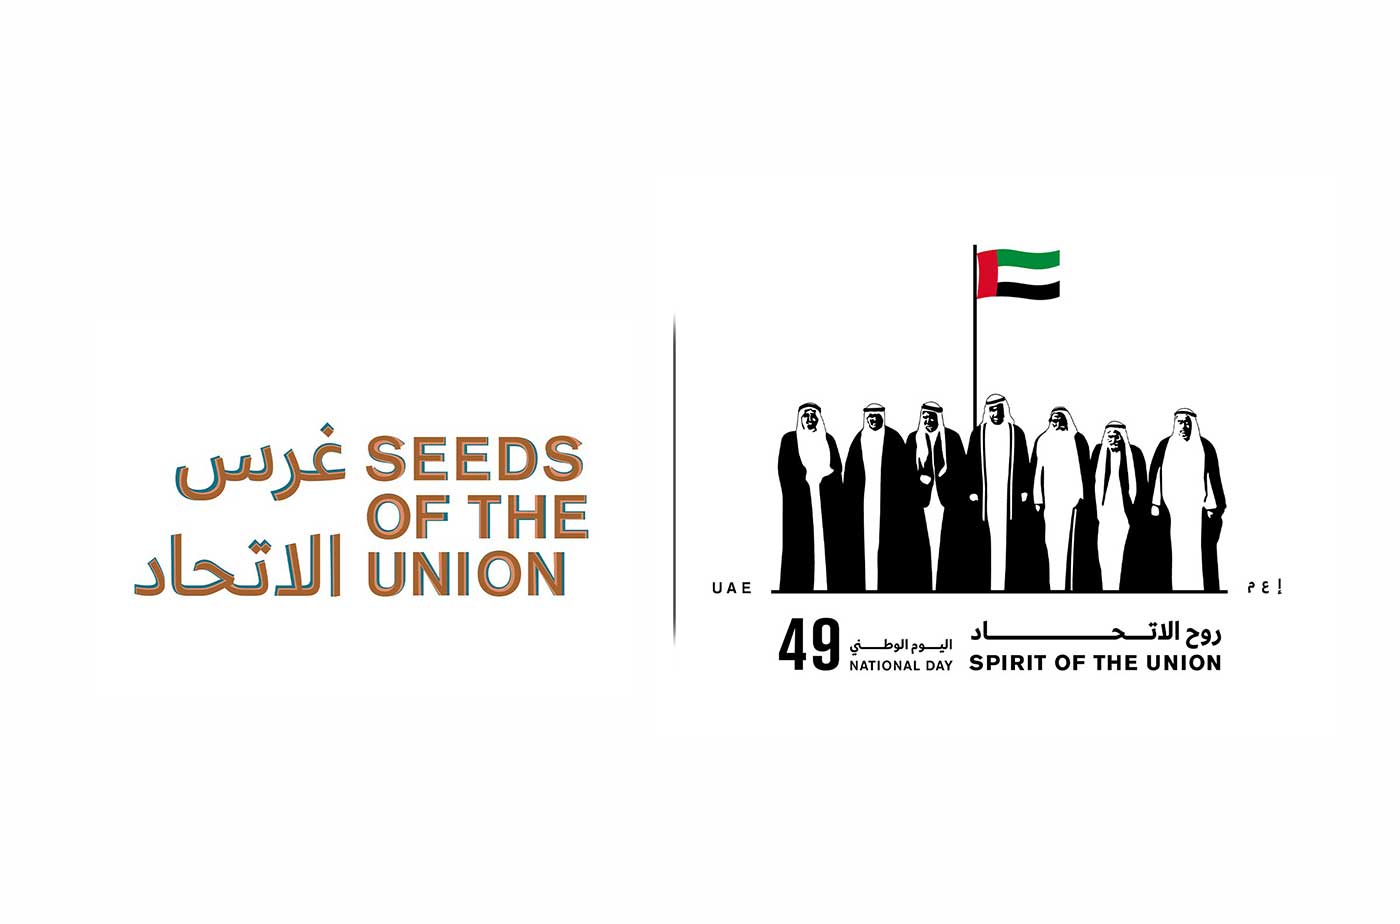 انطلاق الاحتفال الرسمي باليوم الوطني 49 غرس الاتحاد في الثاني من ديسمبر عبر الإمارات أخبار وتقارير البيان